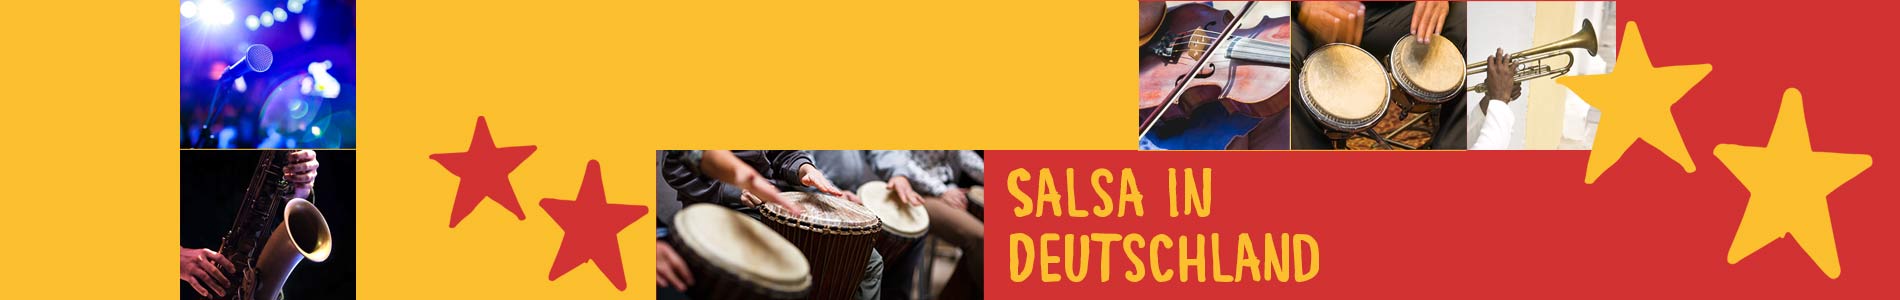 Salsa in Deißlingen – Salsa lernen und tanzen, Tanzkurse, Partys, Veranstaltungen